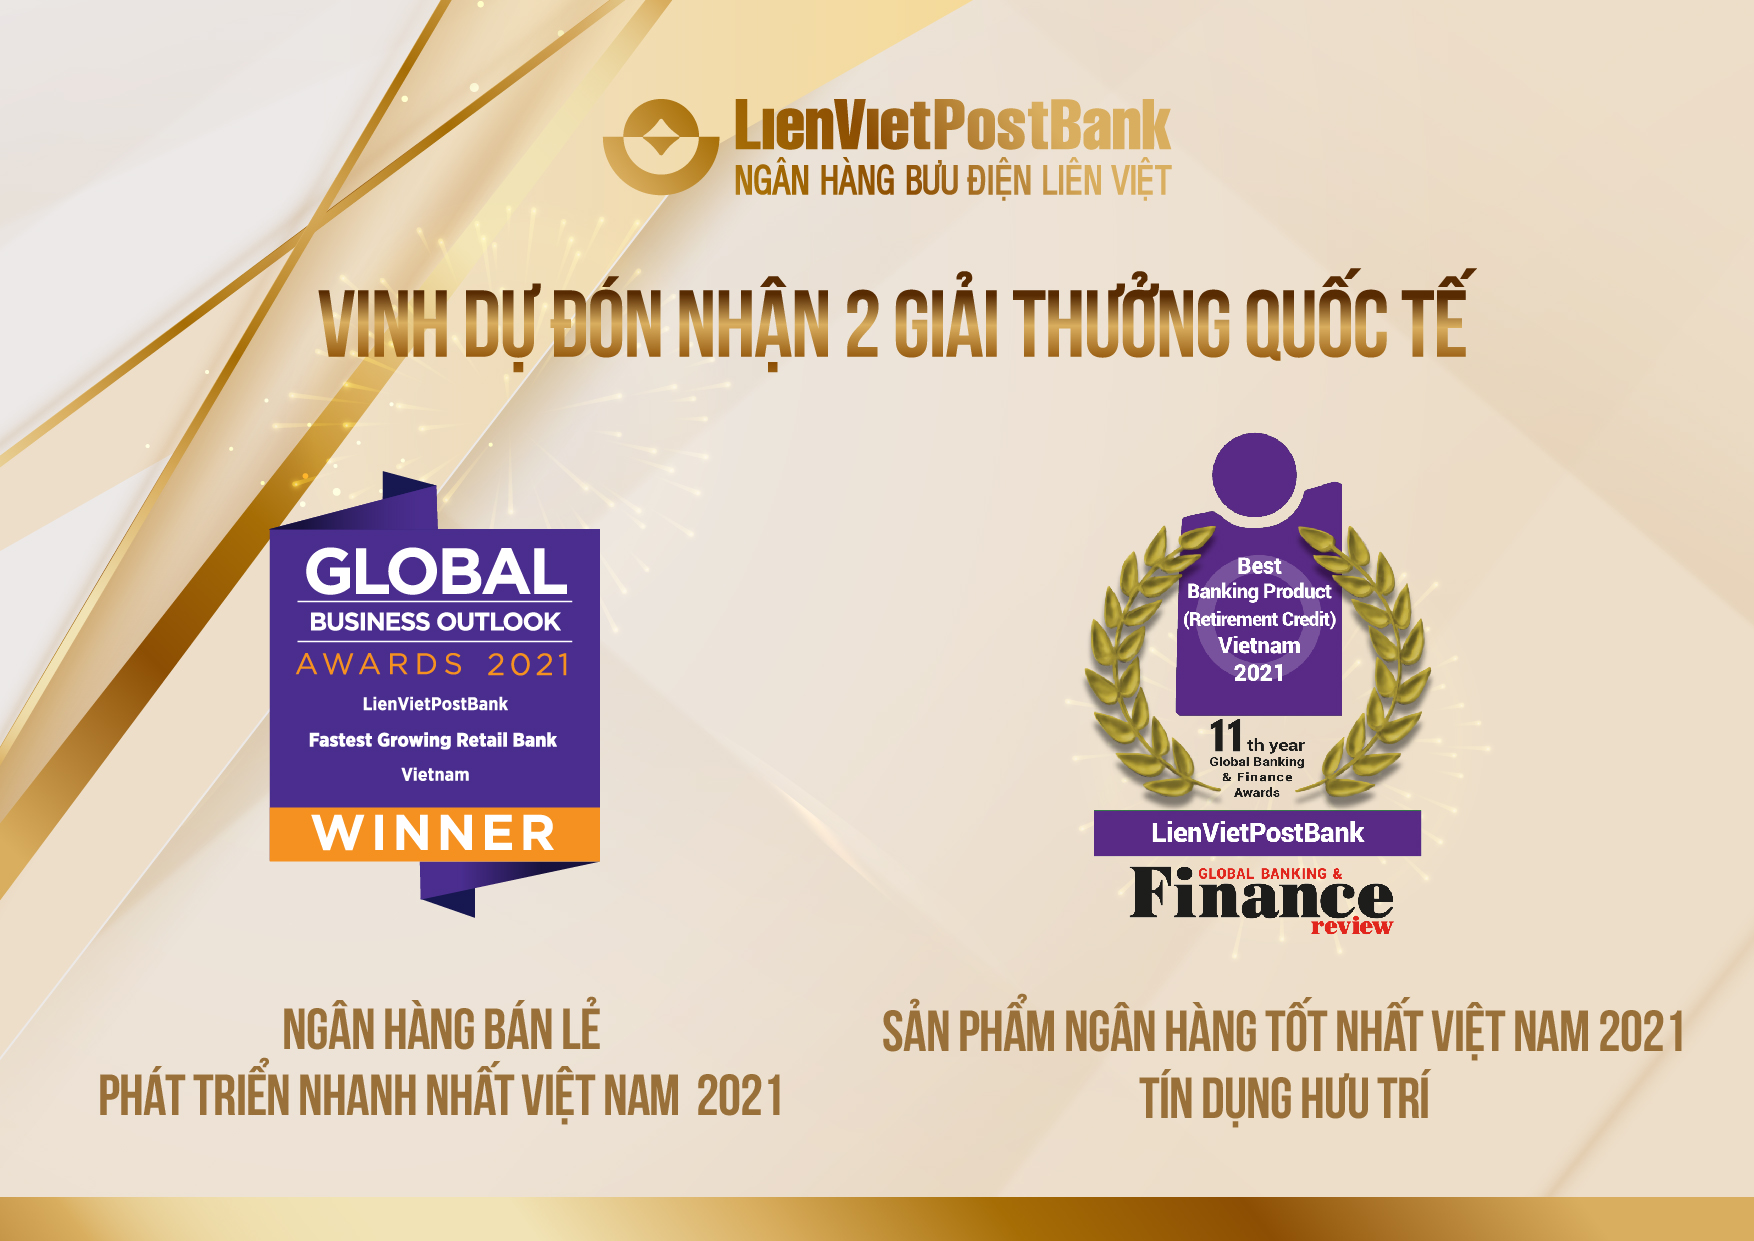 LienVietPostBank vinh dự nhận 2 giải thưởng quốc tế uy tín - Ảnh 1.